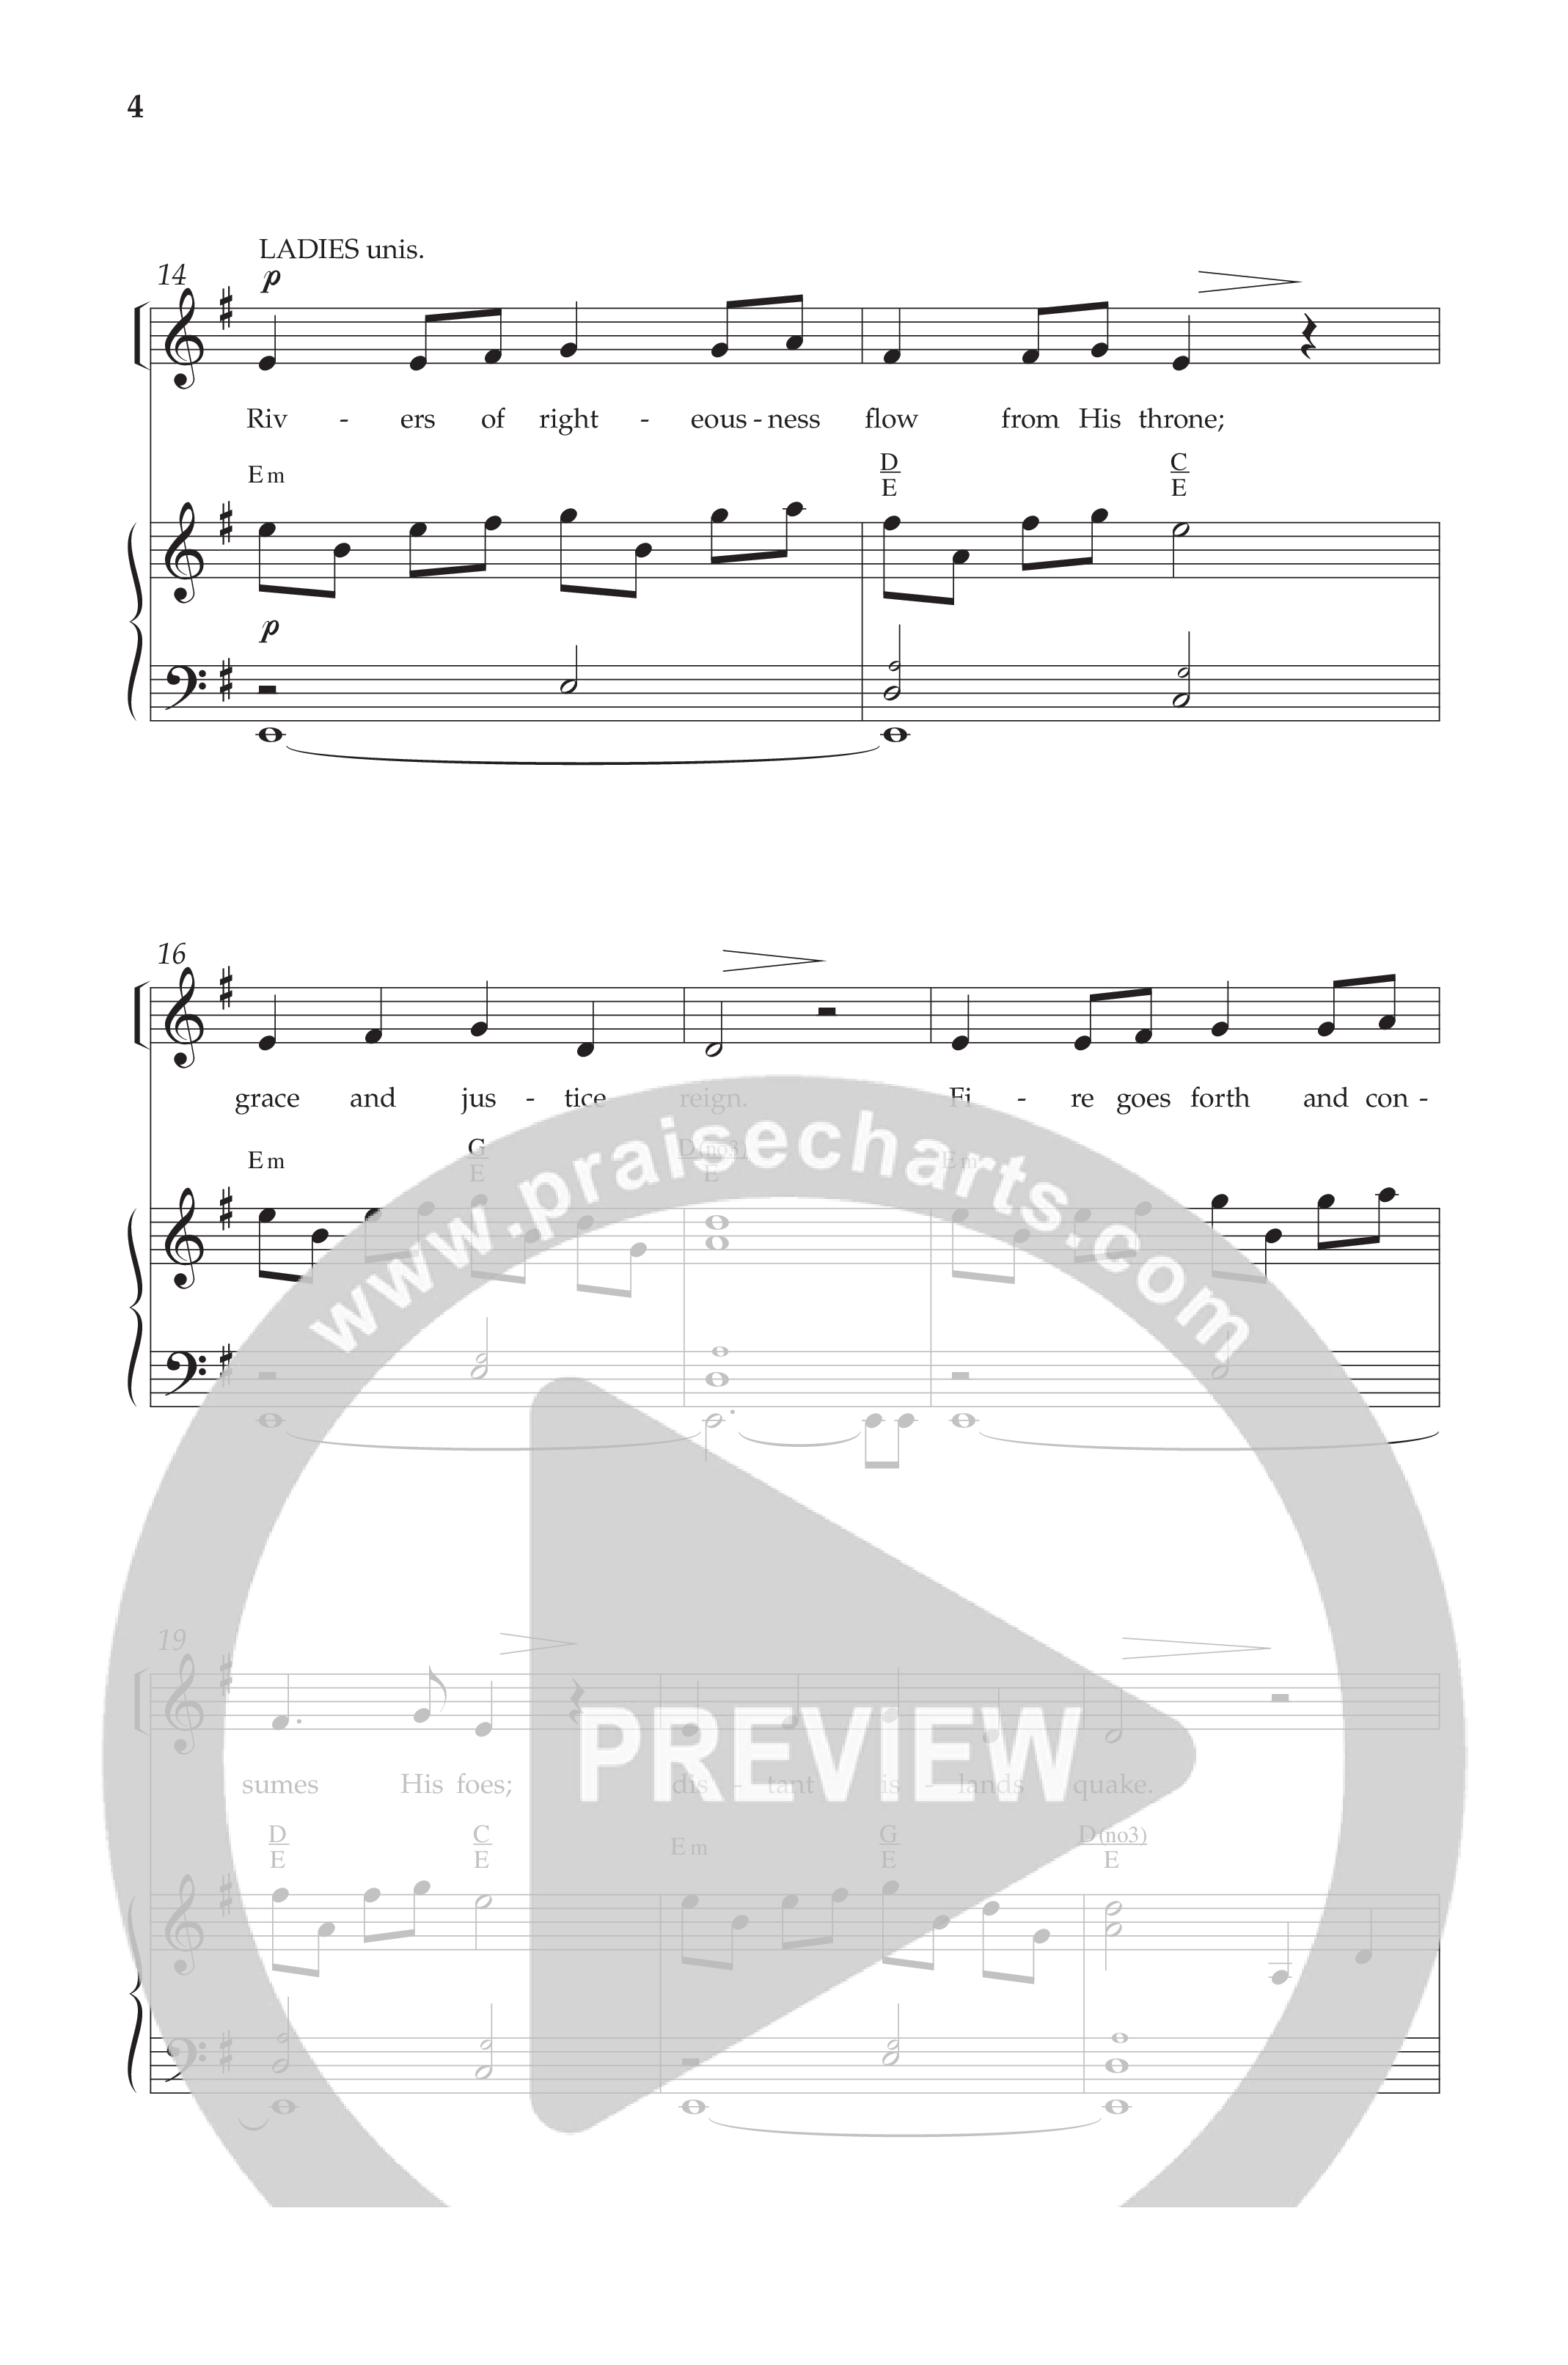 Almighty One (Choral Anthem SATB) Anthem (SATB/Piano) (Lifeway Choral / Arr. Bradley Knight)